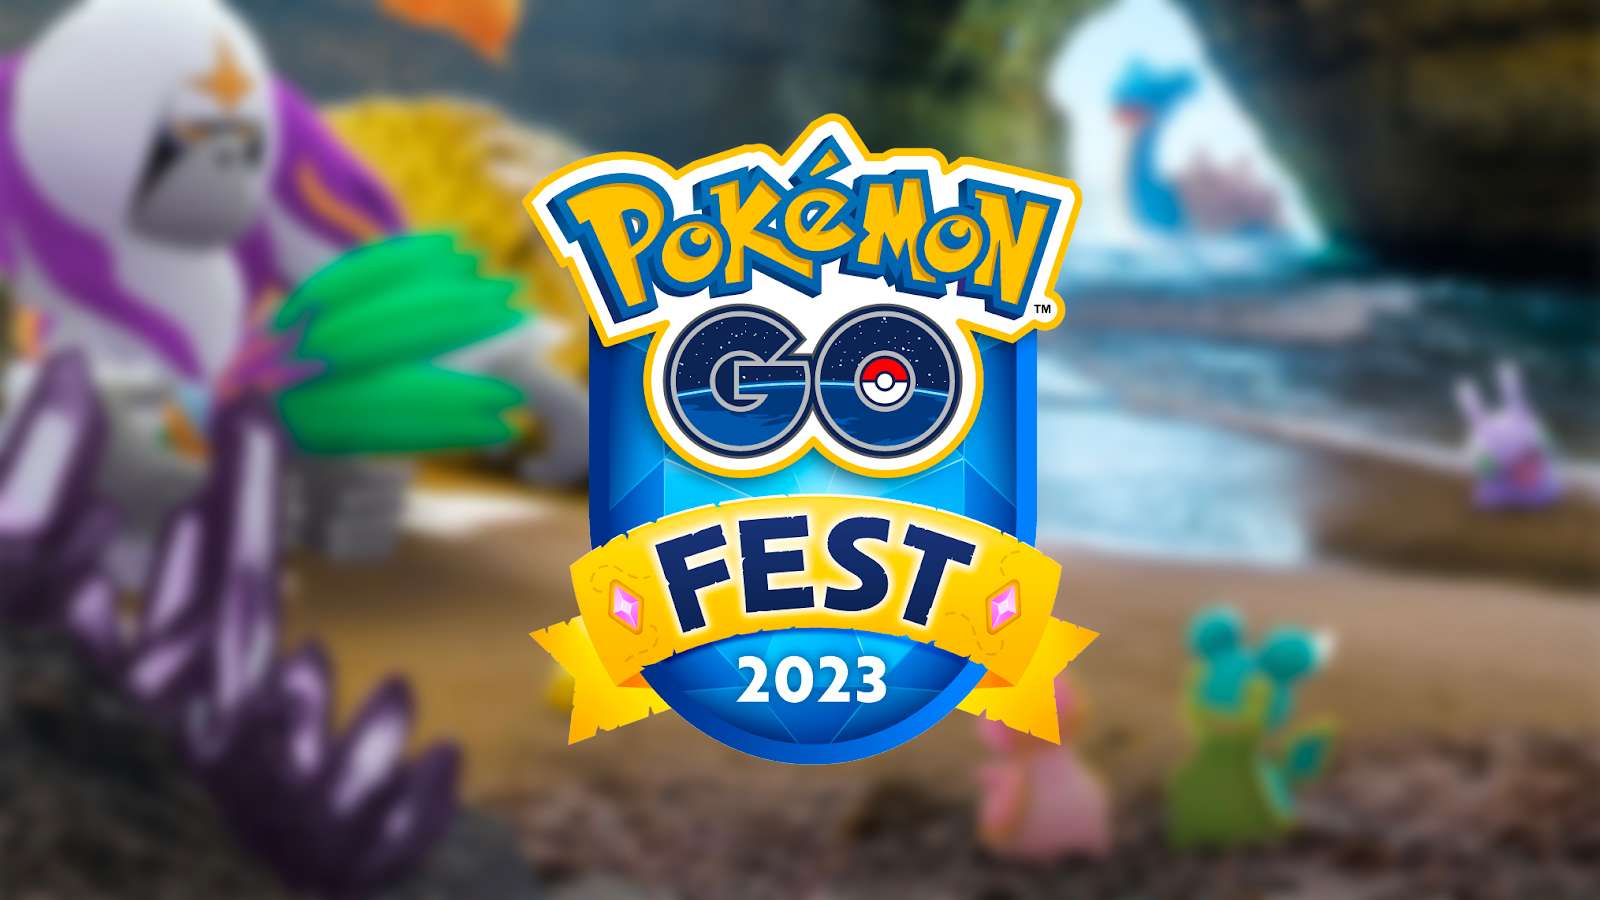 The logo for Pokemon Go Fest 2023 Global